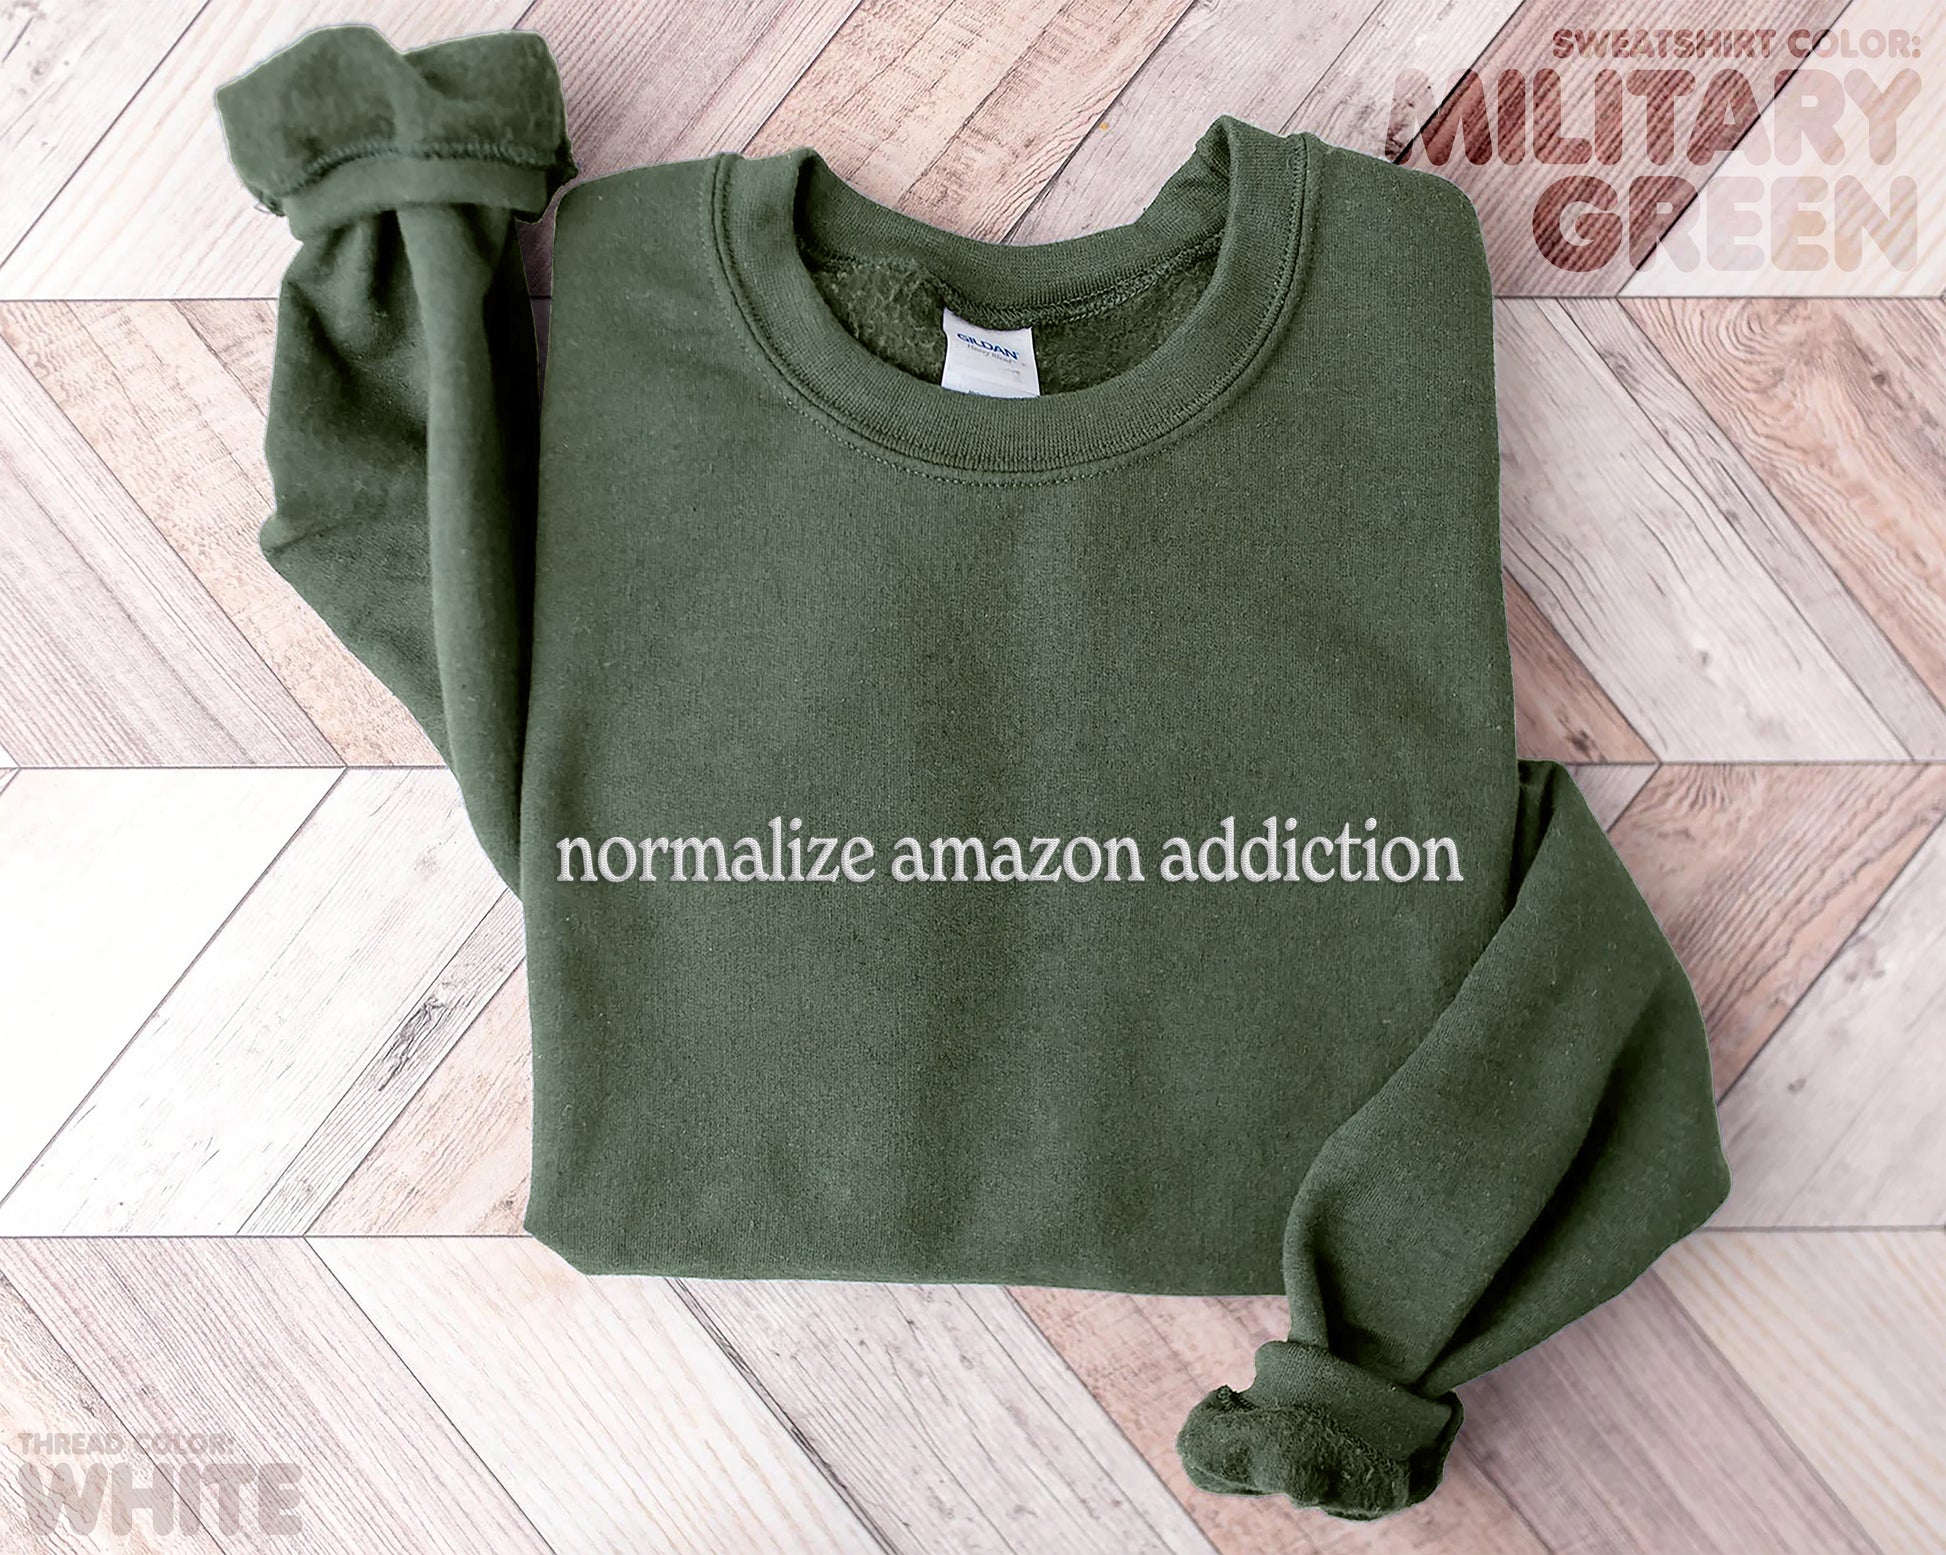 Normalize Amazon Addiction Sweatshirt